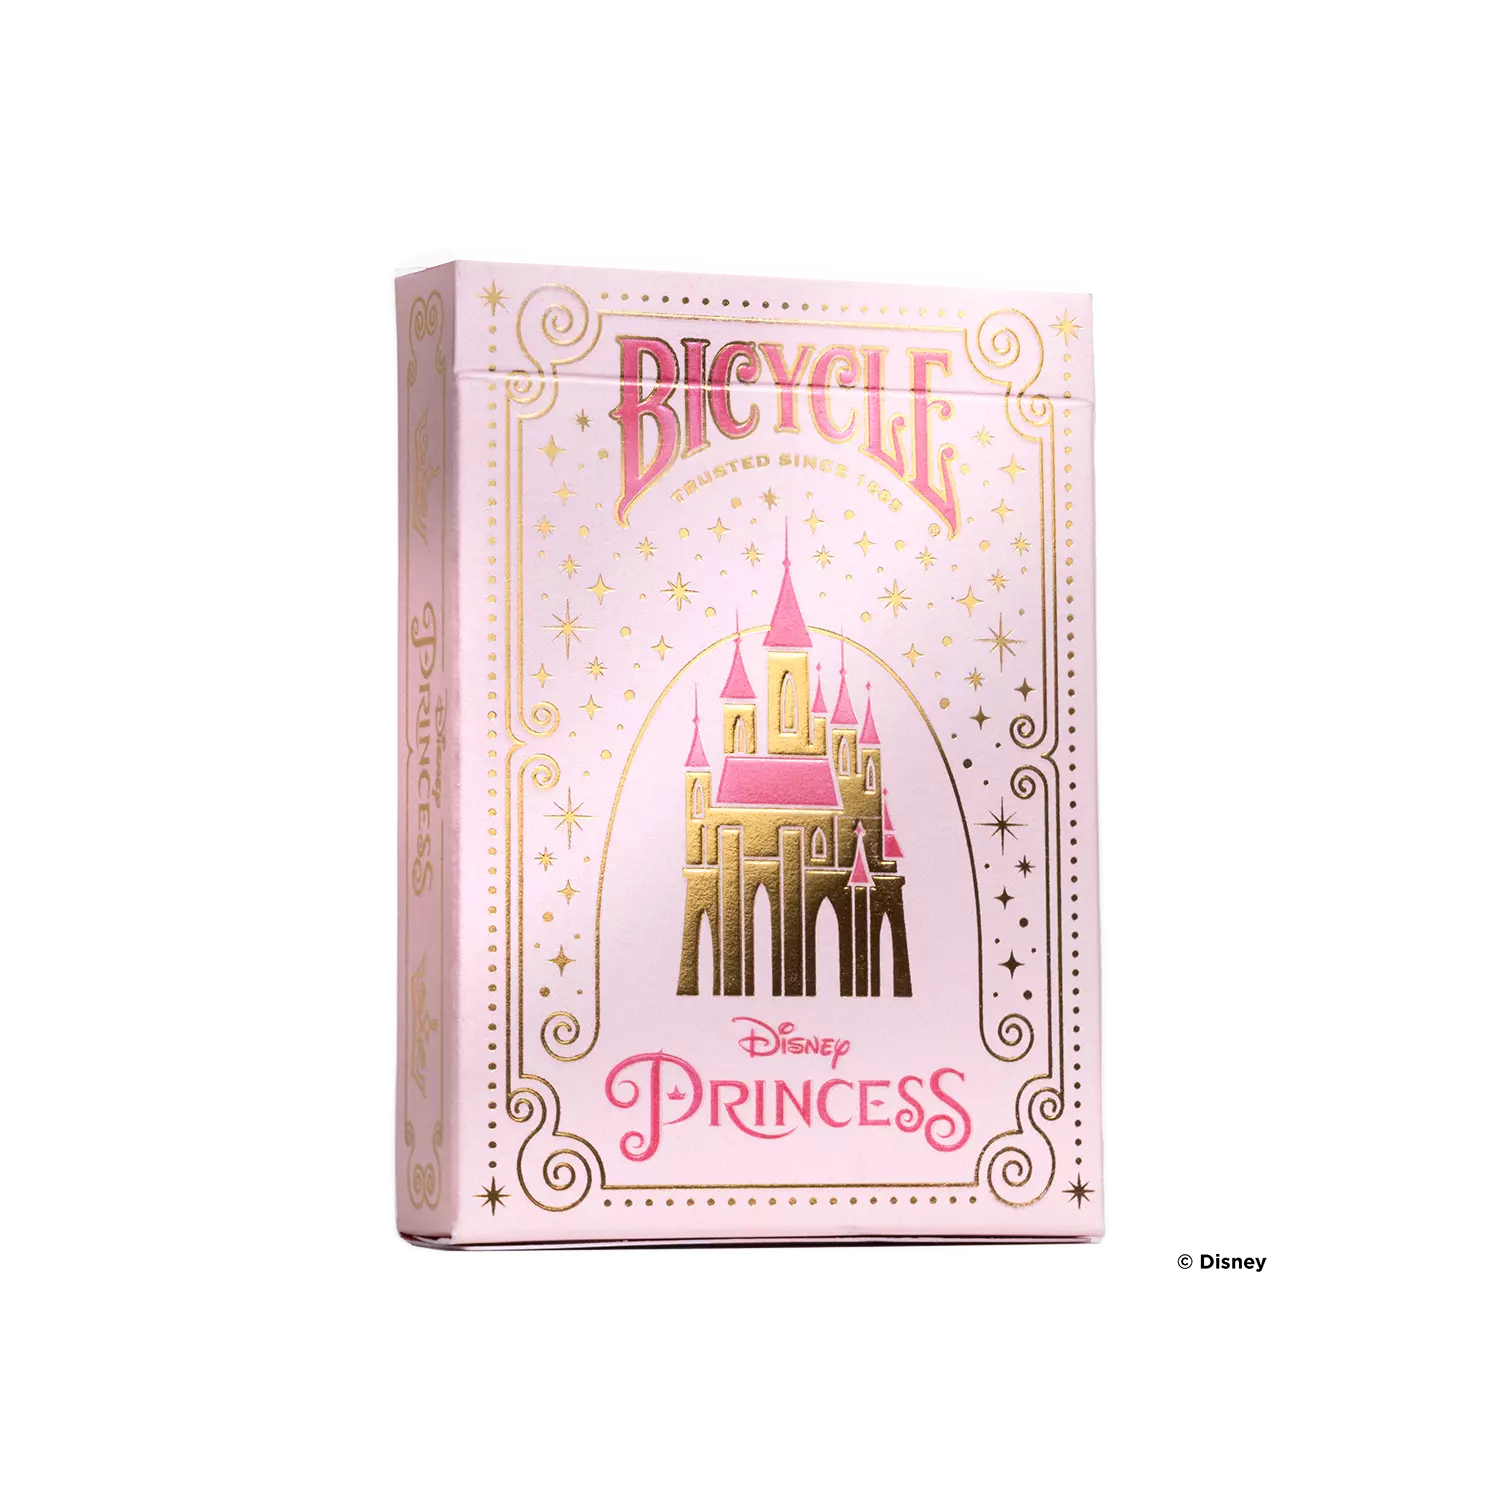 Eine Bicycle Ultimate Bicycle Disney Princess pink rosa Kartenschachtel steht mit sichtbarer Vorderseite vor einem weißem Hintergrund.